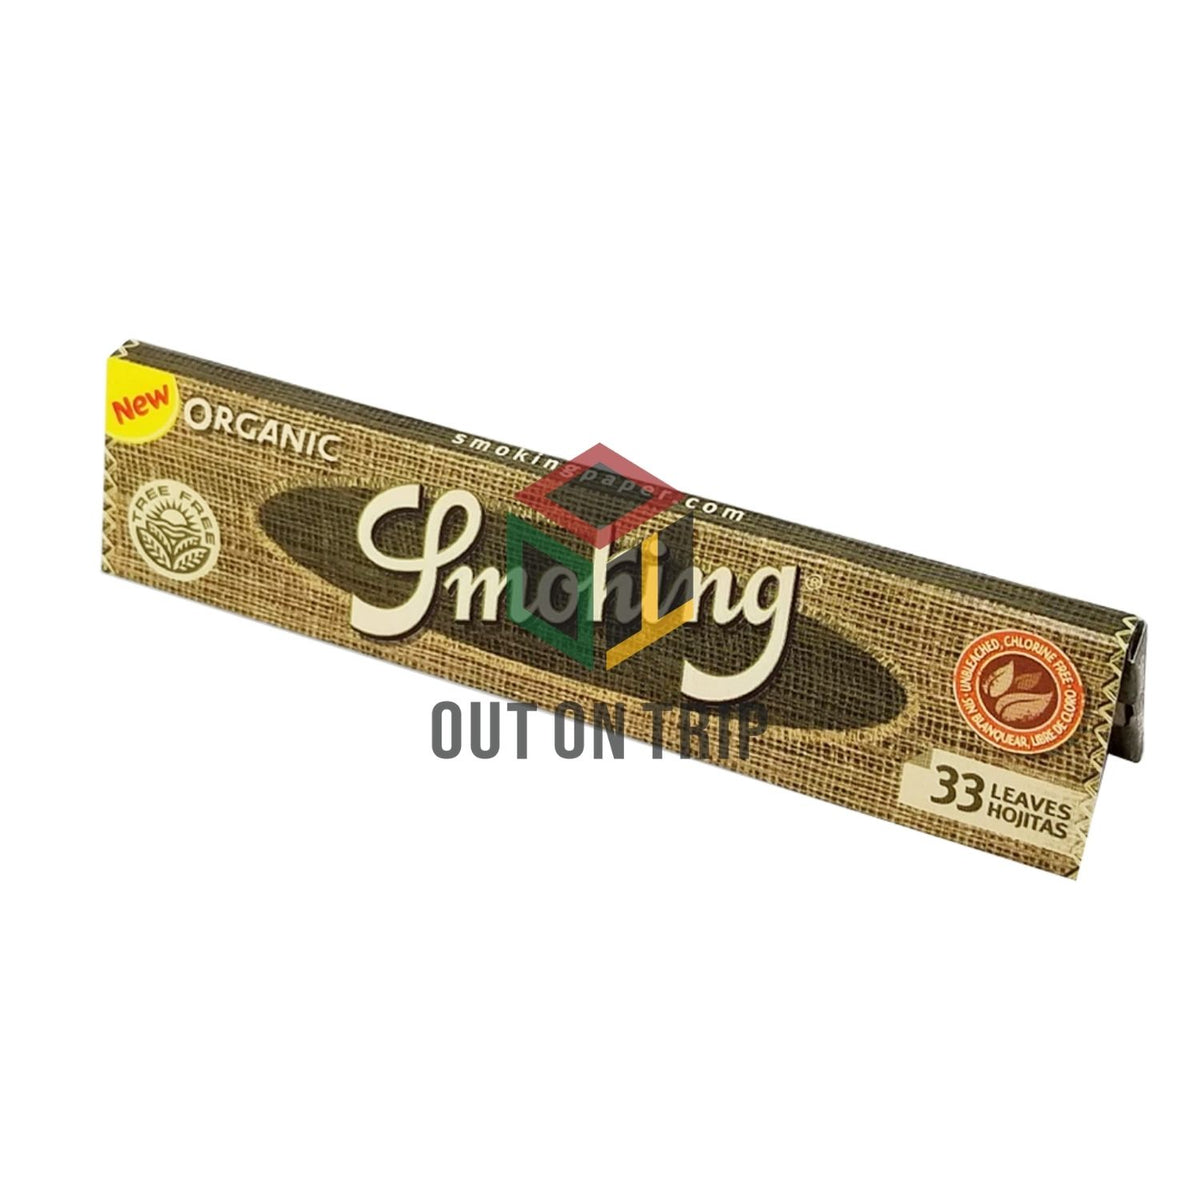 SMOKING Organic King Size - 33 Leaves